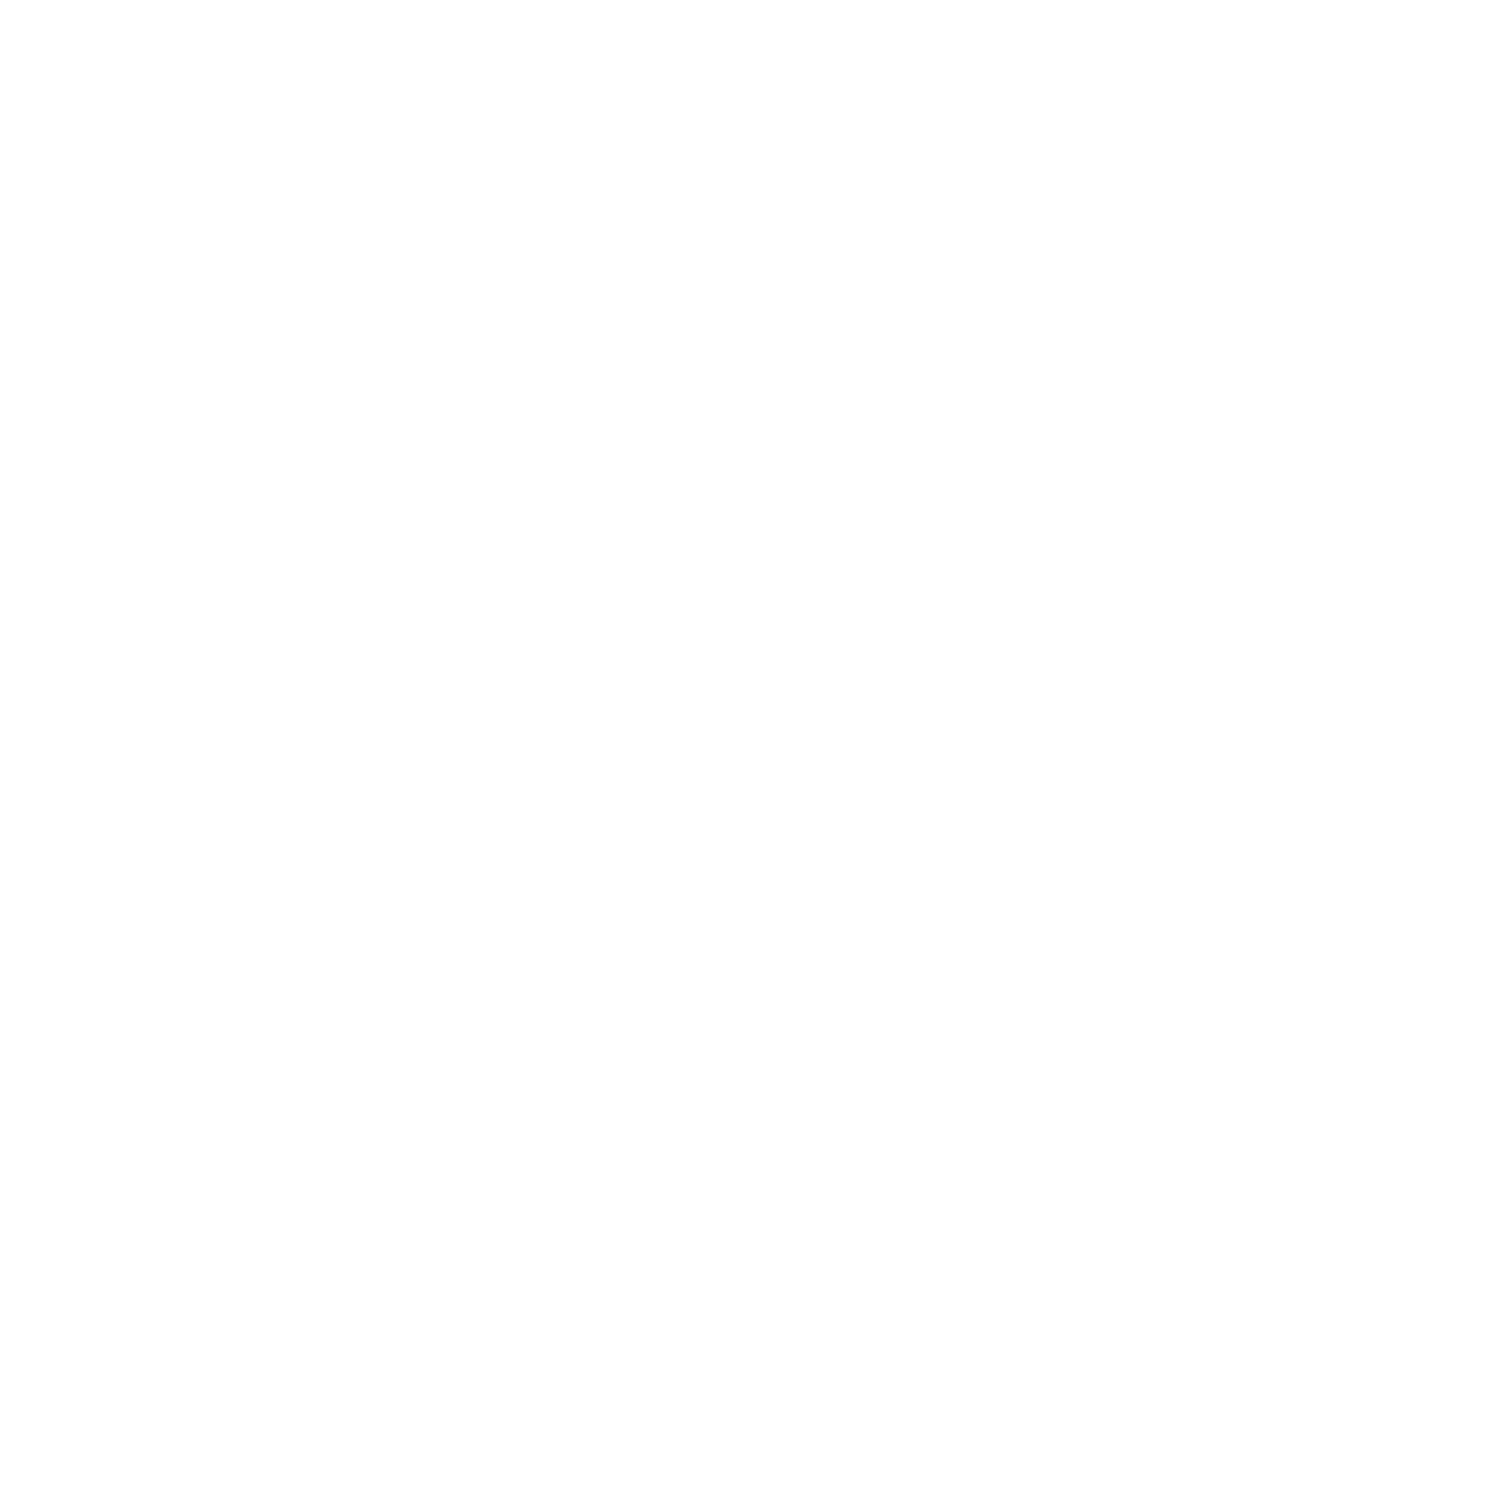 Democracy 2076